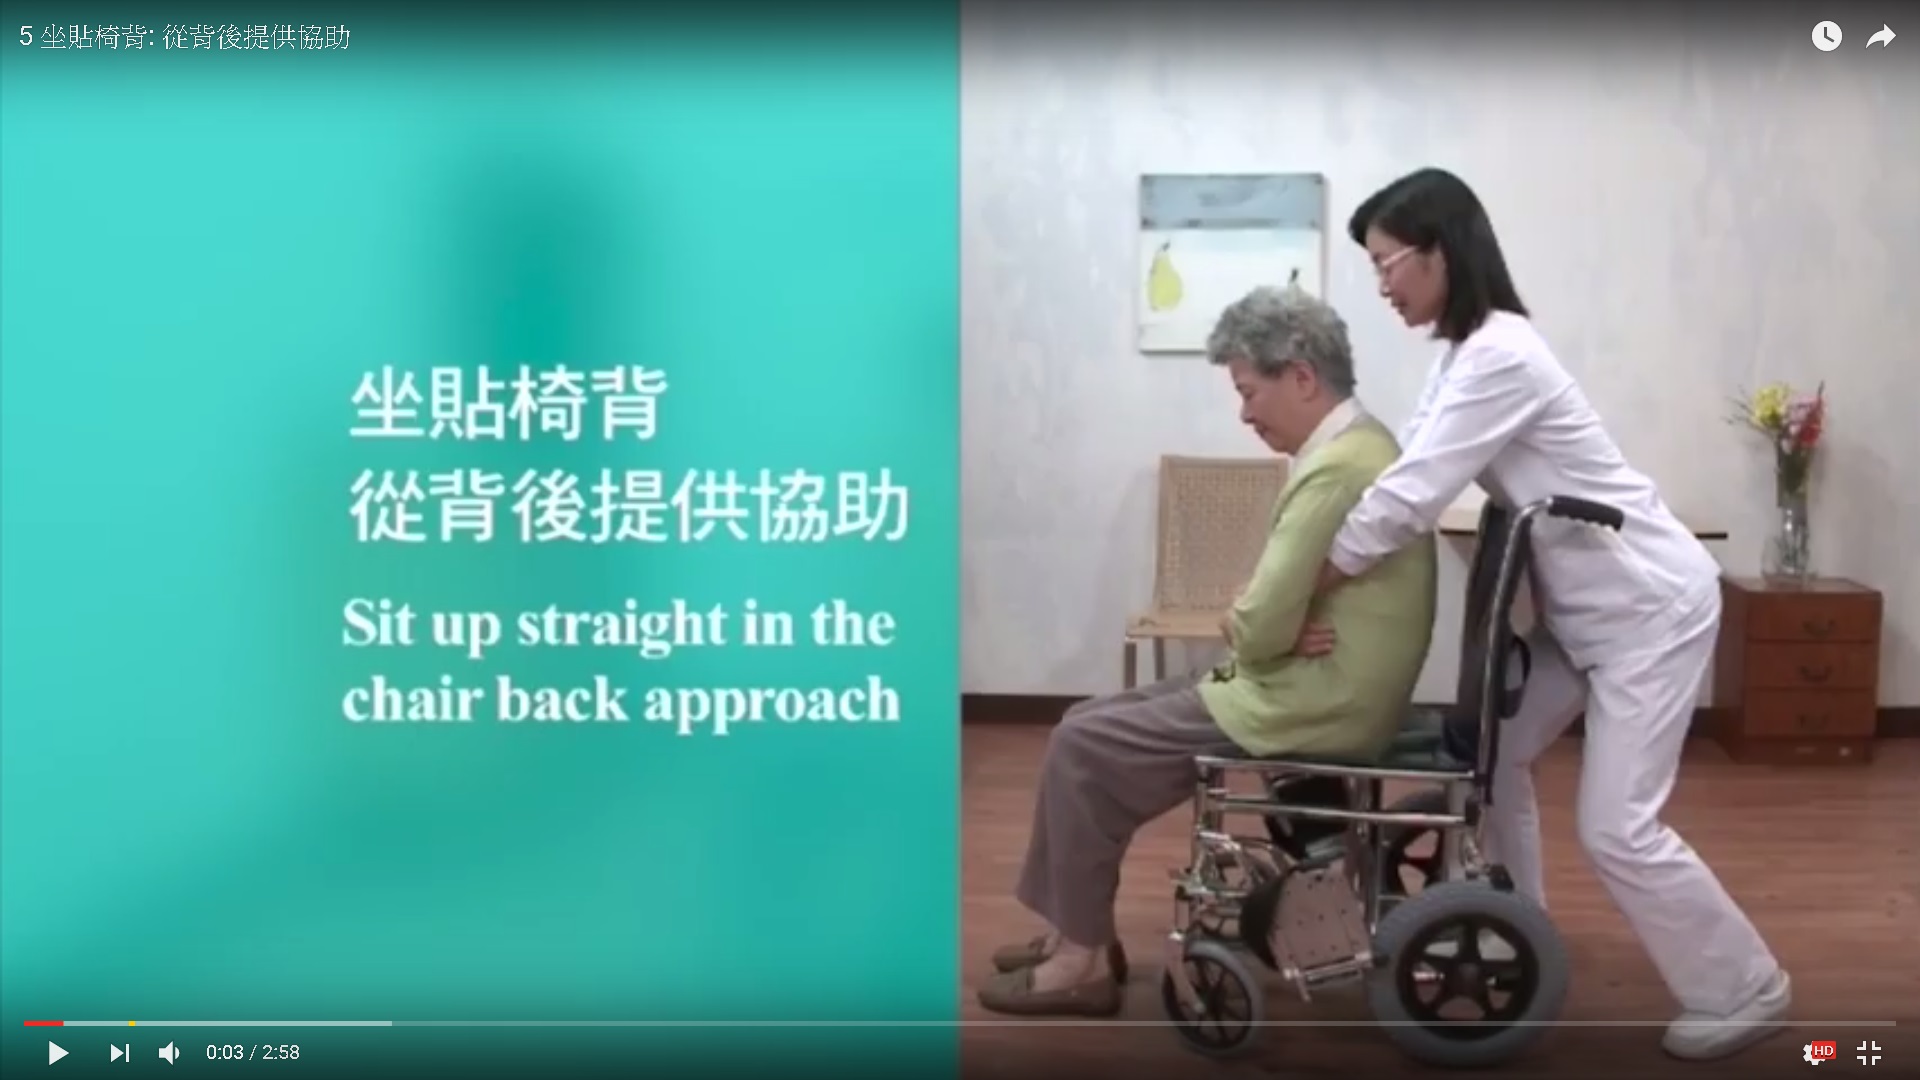 扶抱技巧 —坐贴椅背: 从背后提供协助